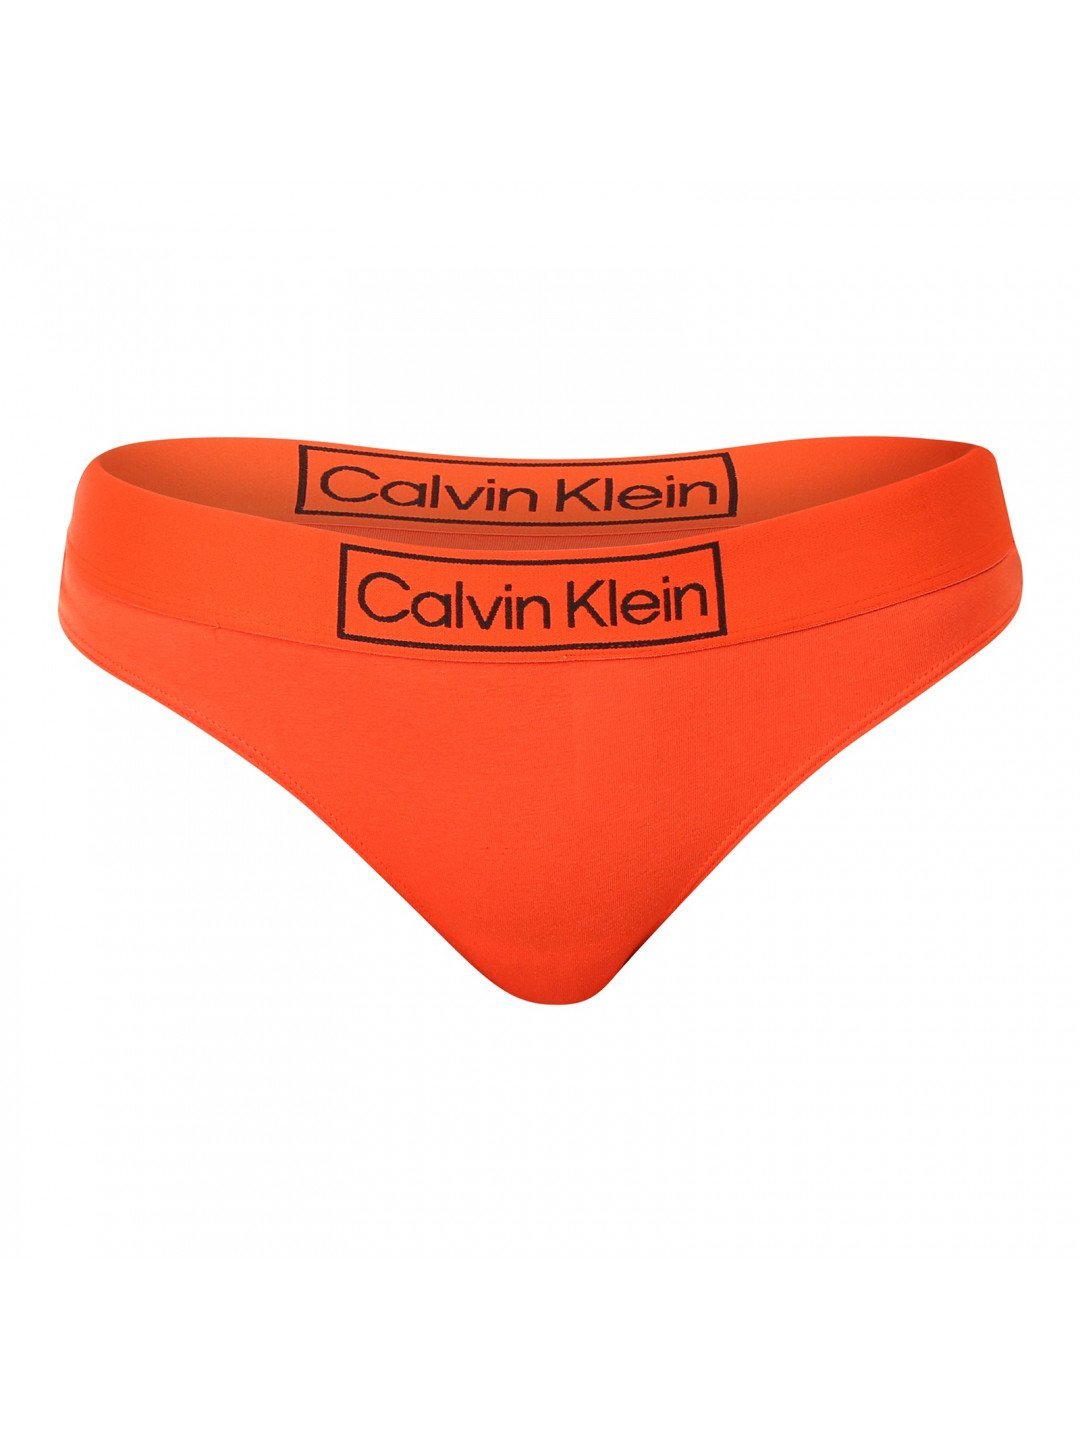 Dámská tanga Calvin Klein oranžová QF6774E-3CI S